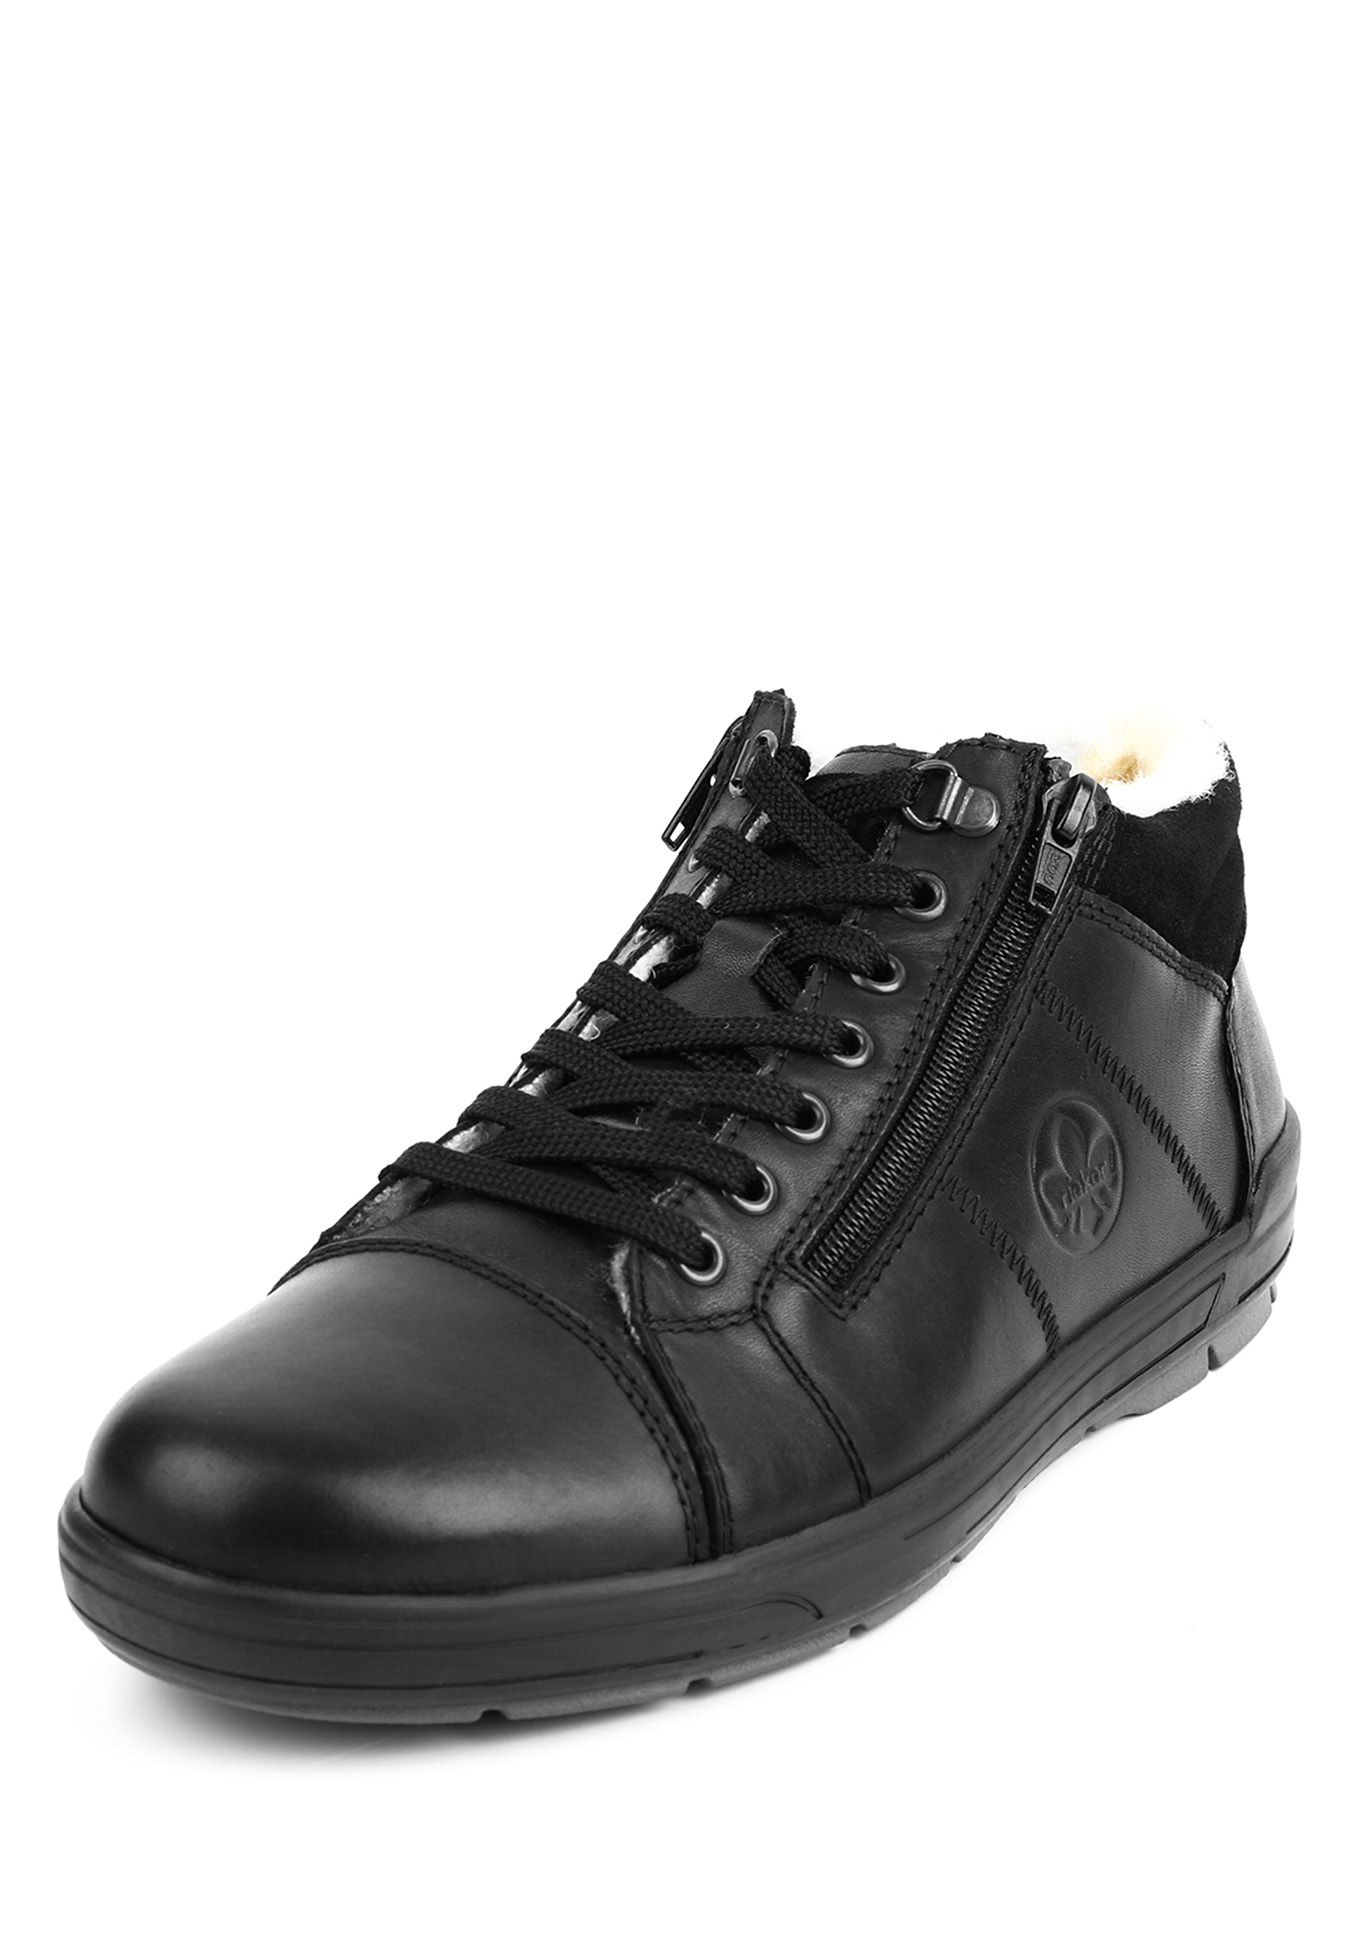 Ботинки мужские "Франческо" Rieker, размер 45, цвет черный - фото 1